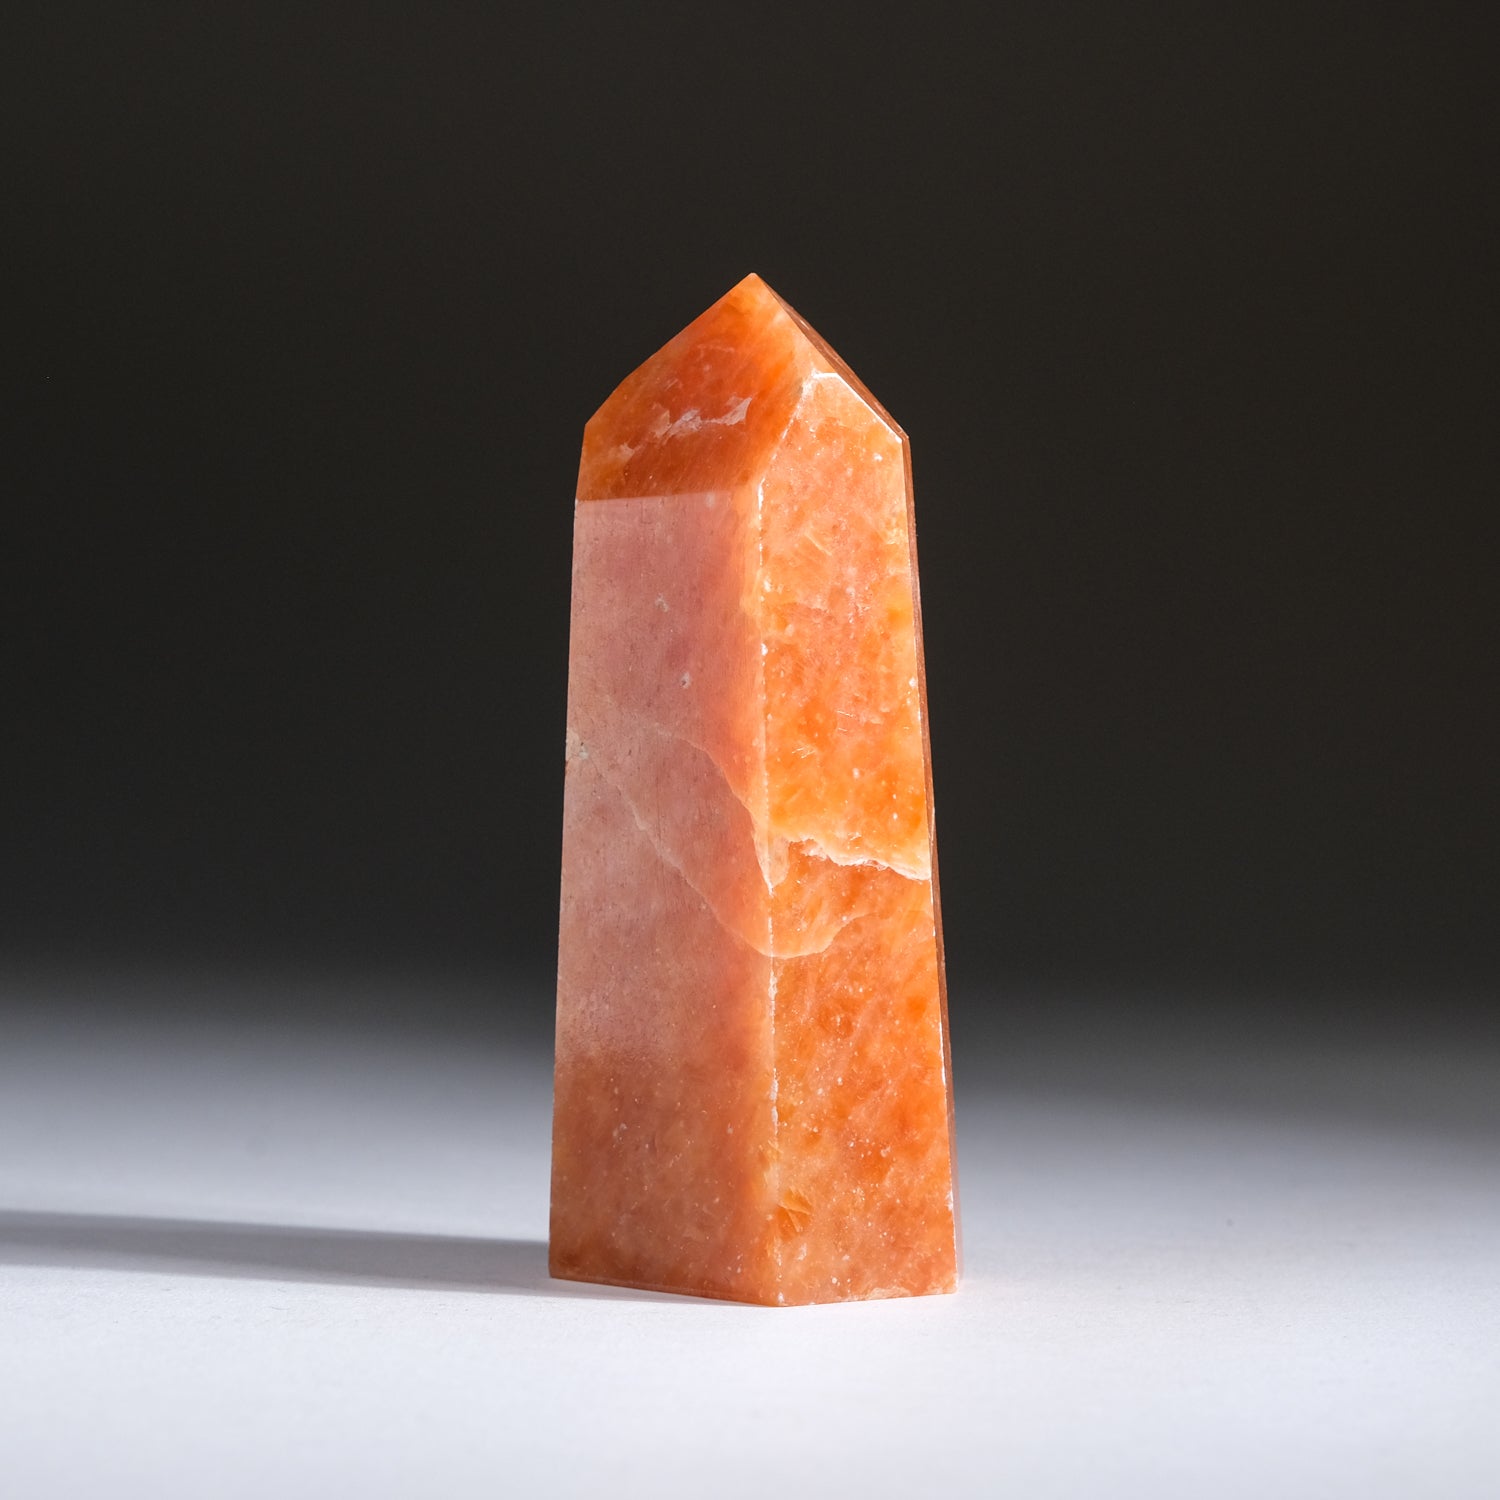 Tangerine Quartz Obelisk From Brazil (208.5 grams)